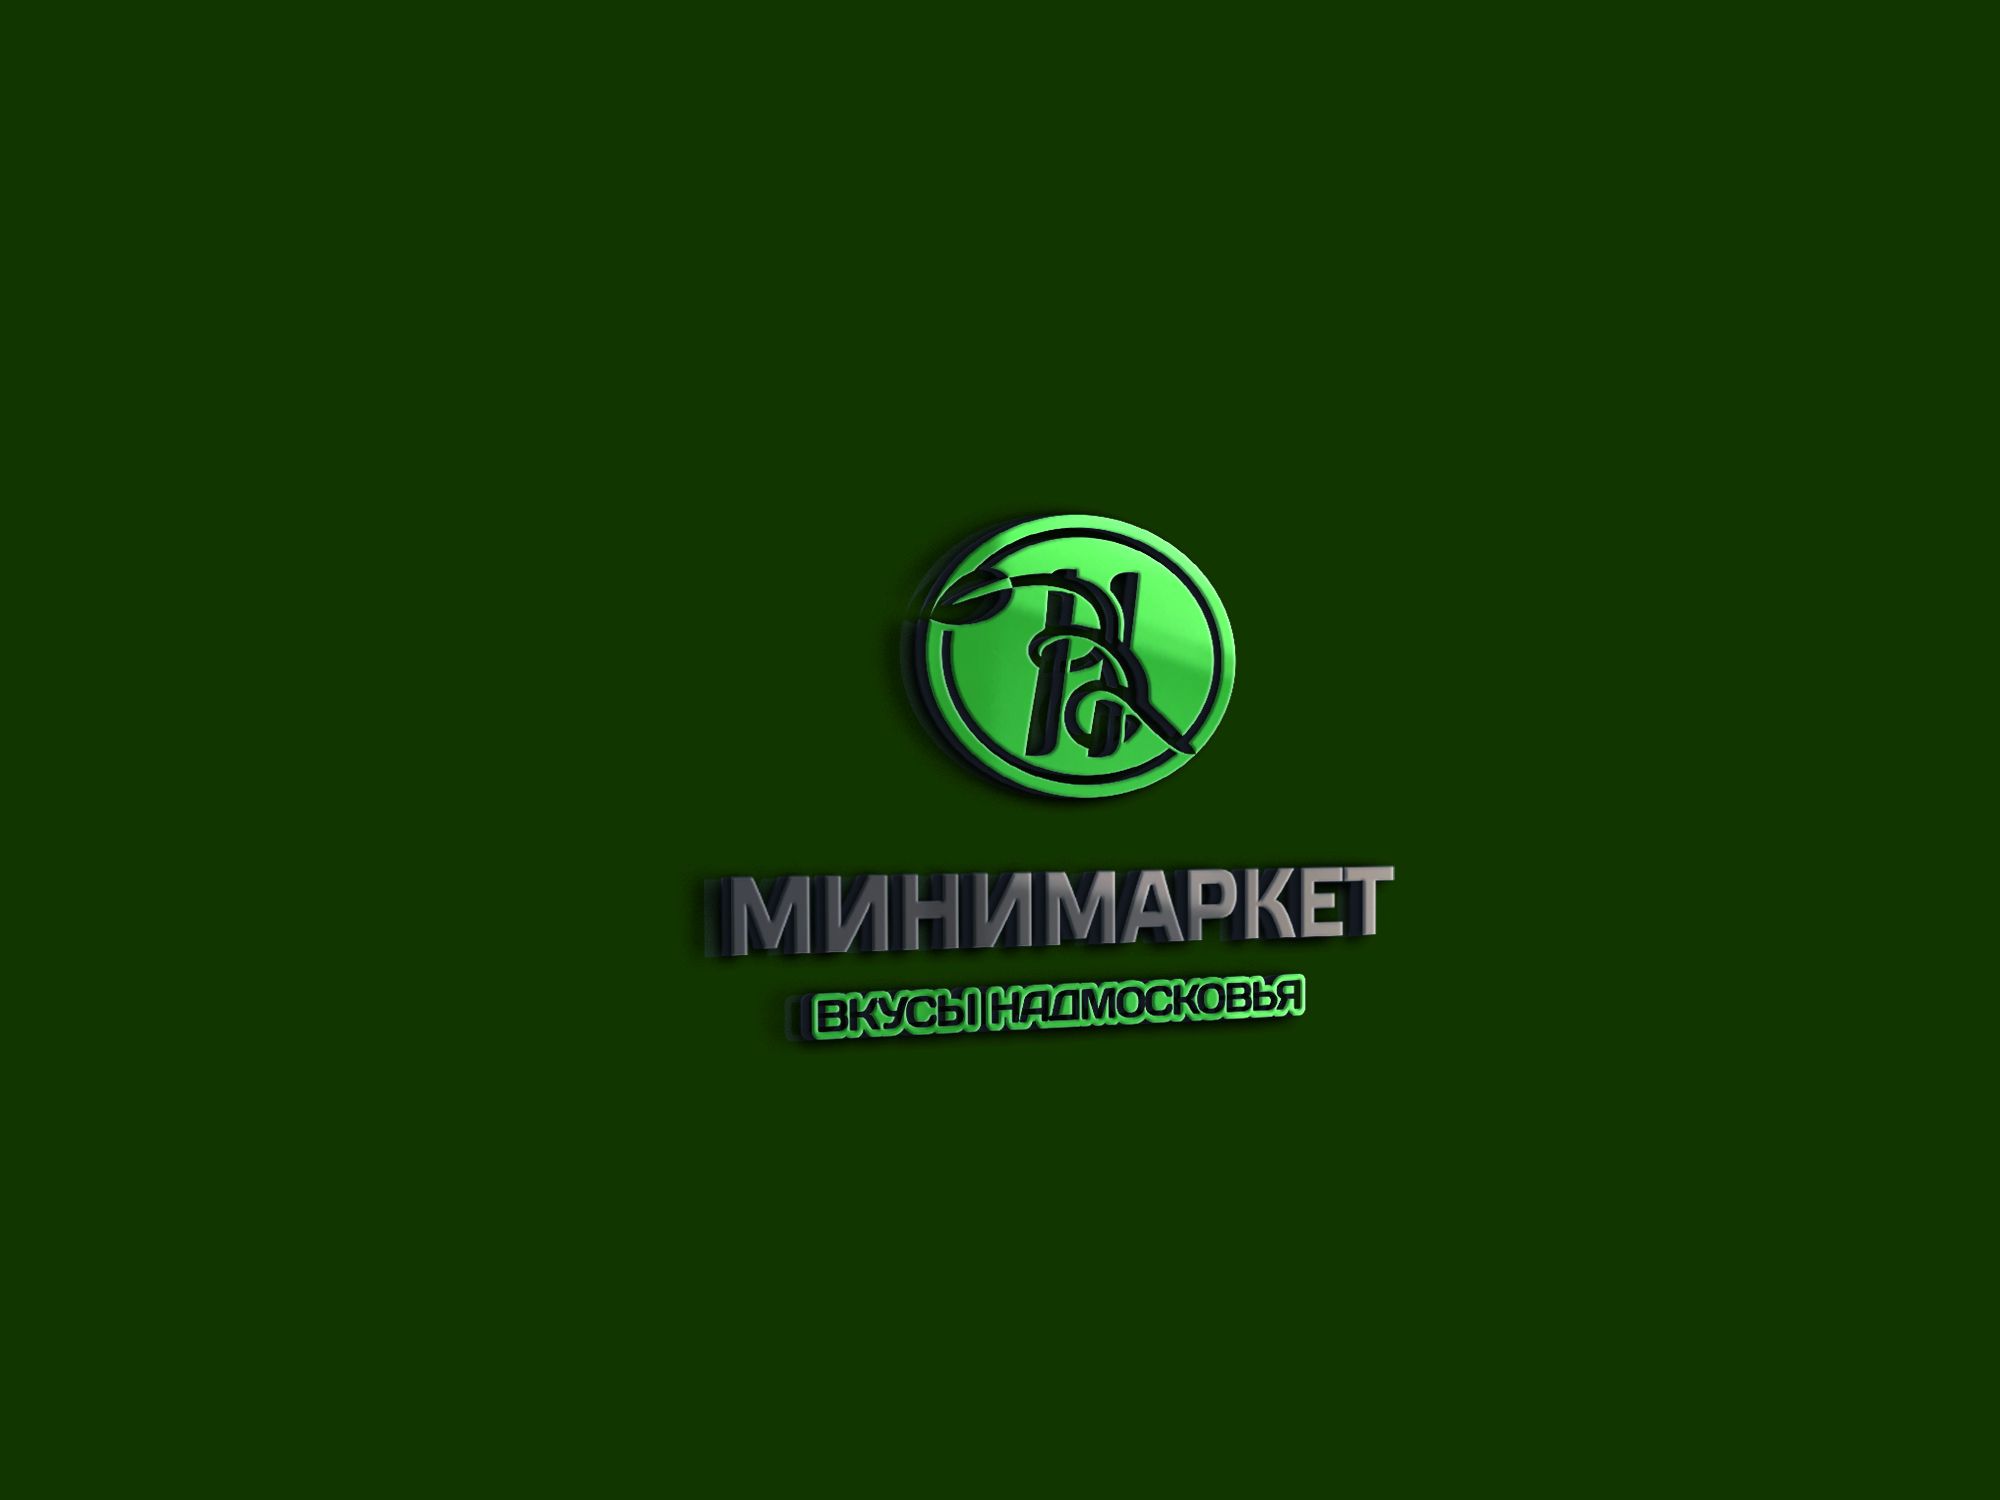 Лого и фирменный стиль для Вкусы Надмосковья - дизайнер markosov